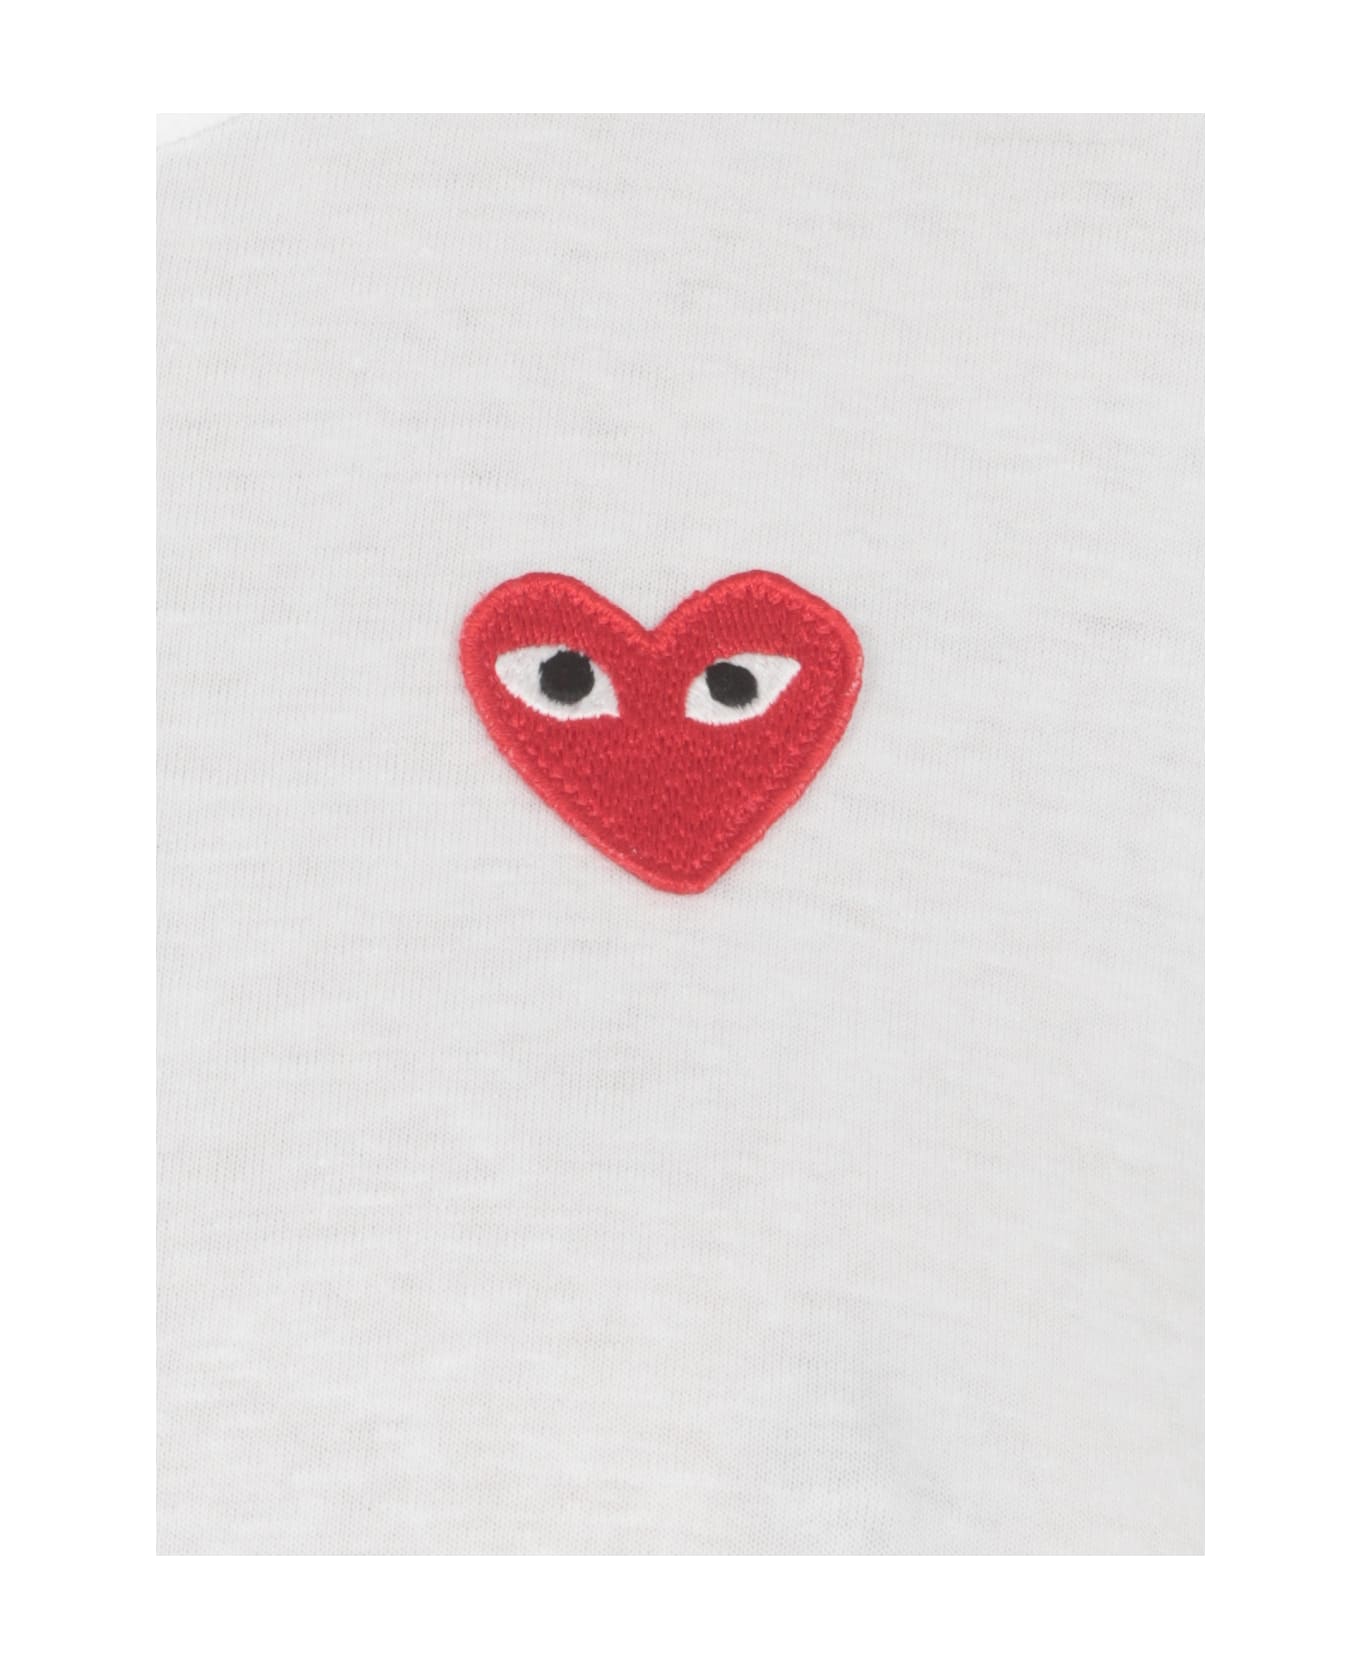 Comme des Garçons Play Heart T-shirt - White